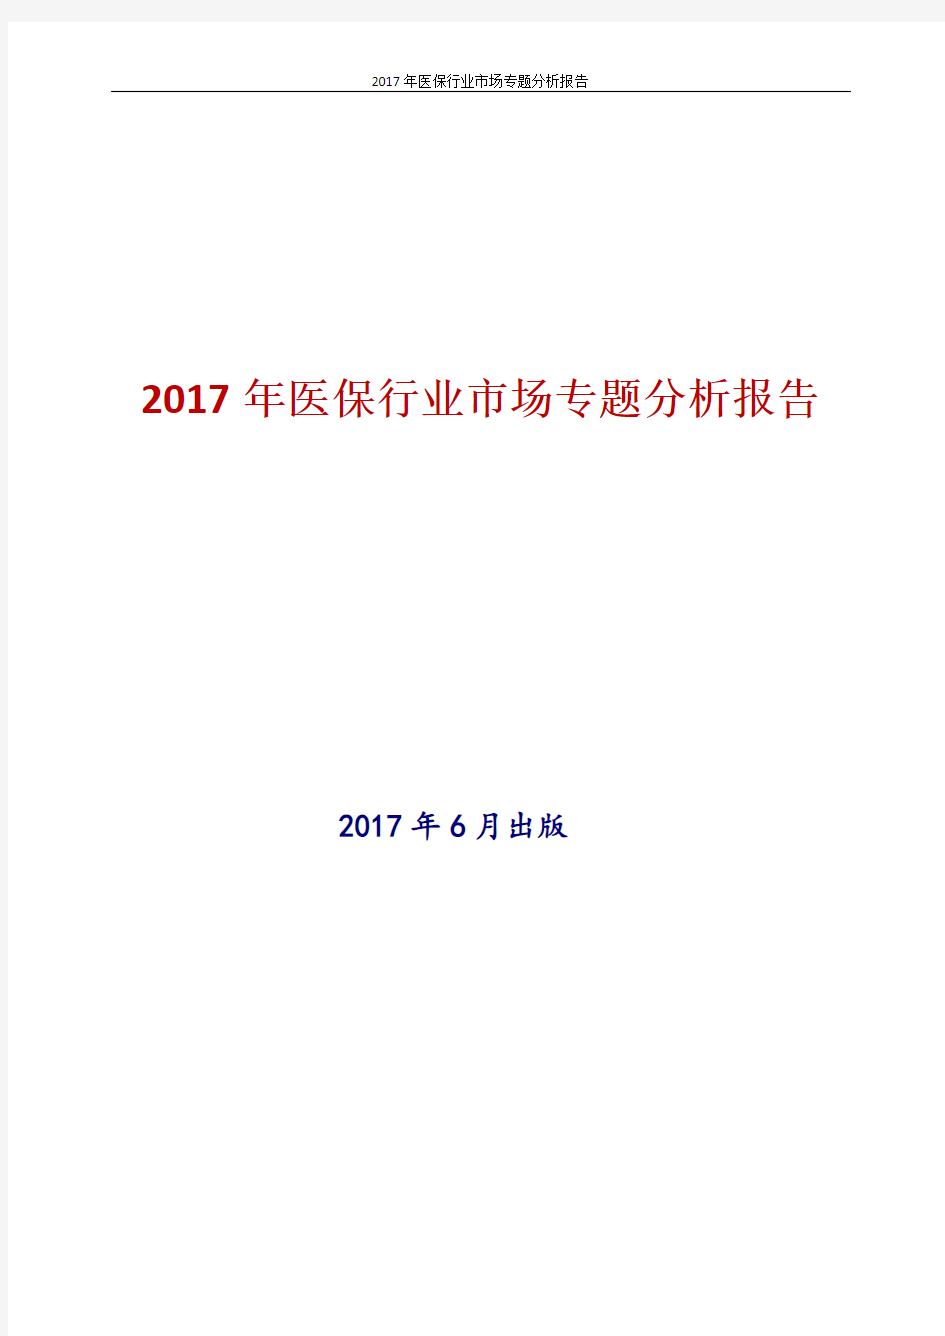 2017年最新版中国医保行业市场专题分析报告